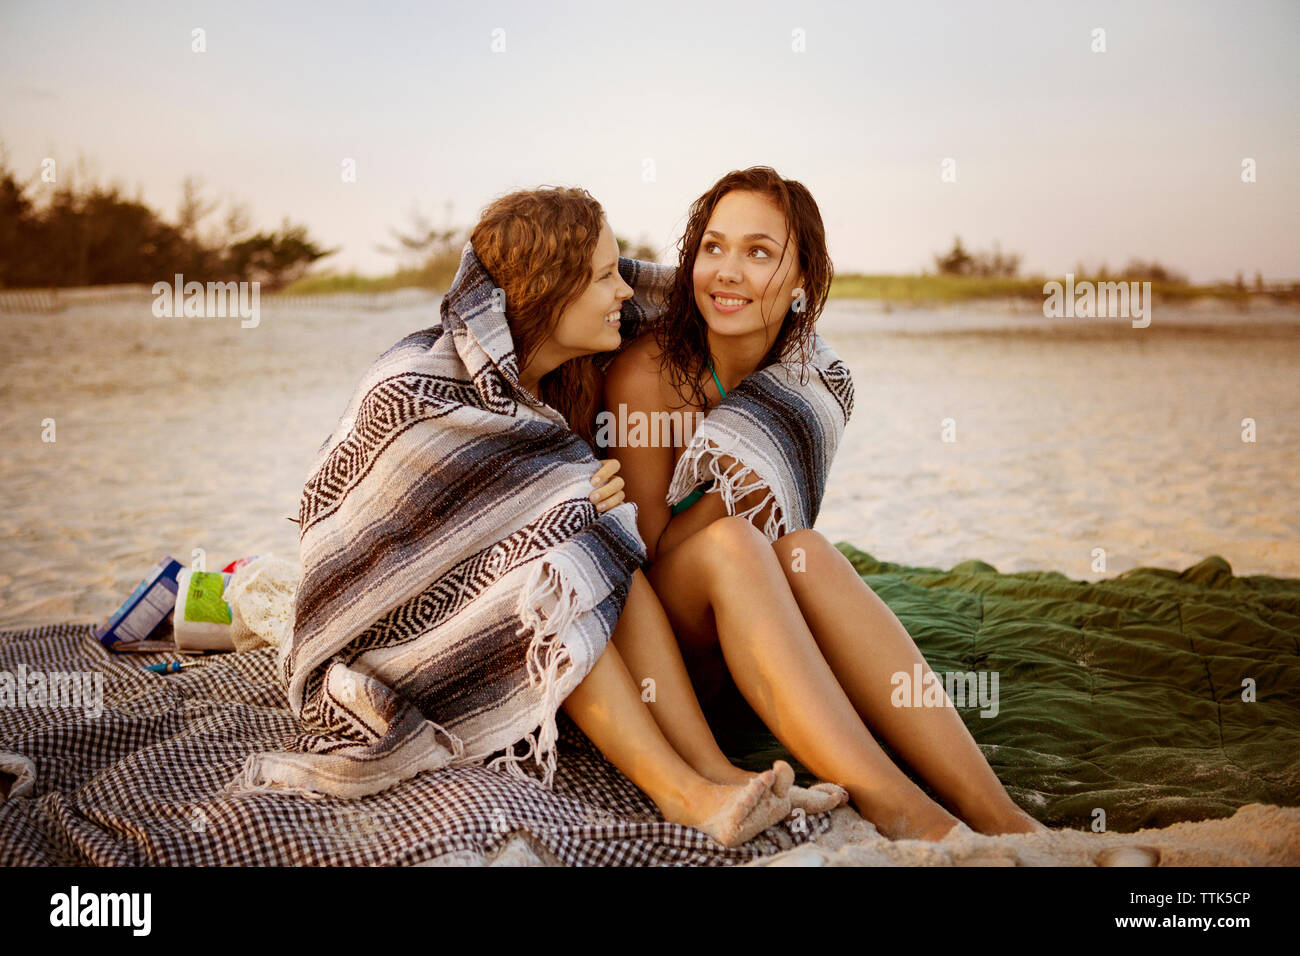 Smiling women enveloppé dans une couverture assis à beach Banque D'Images